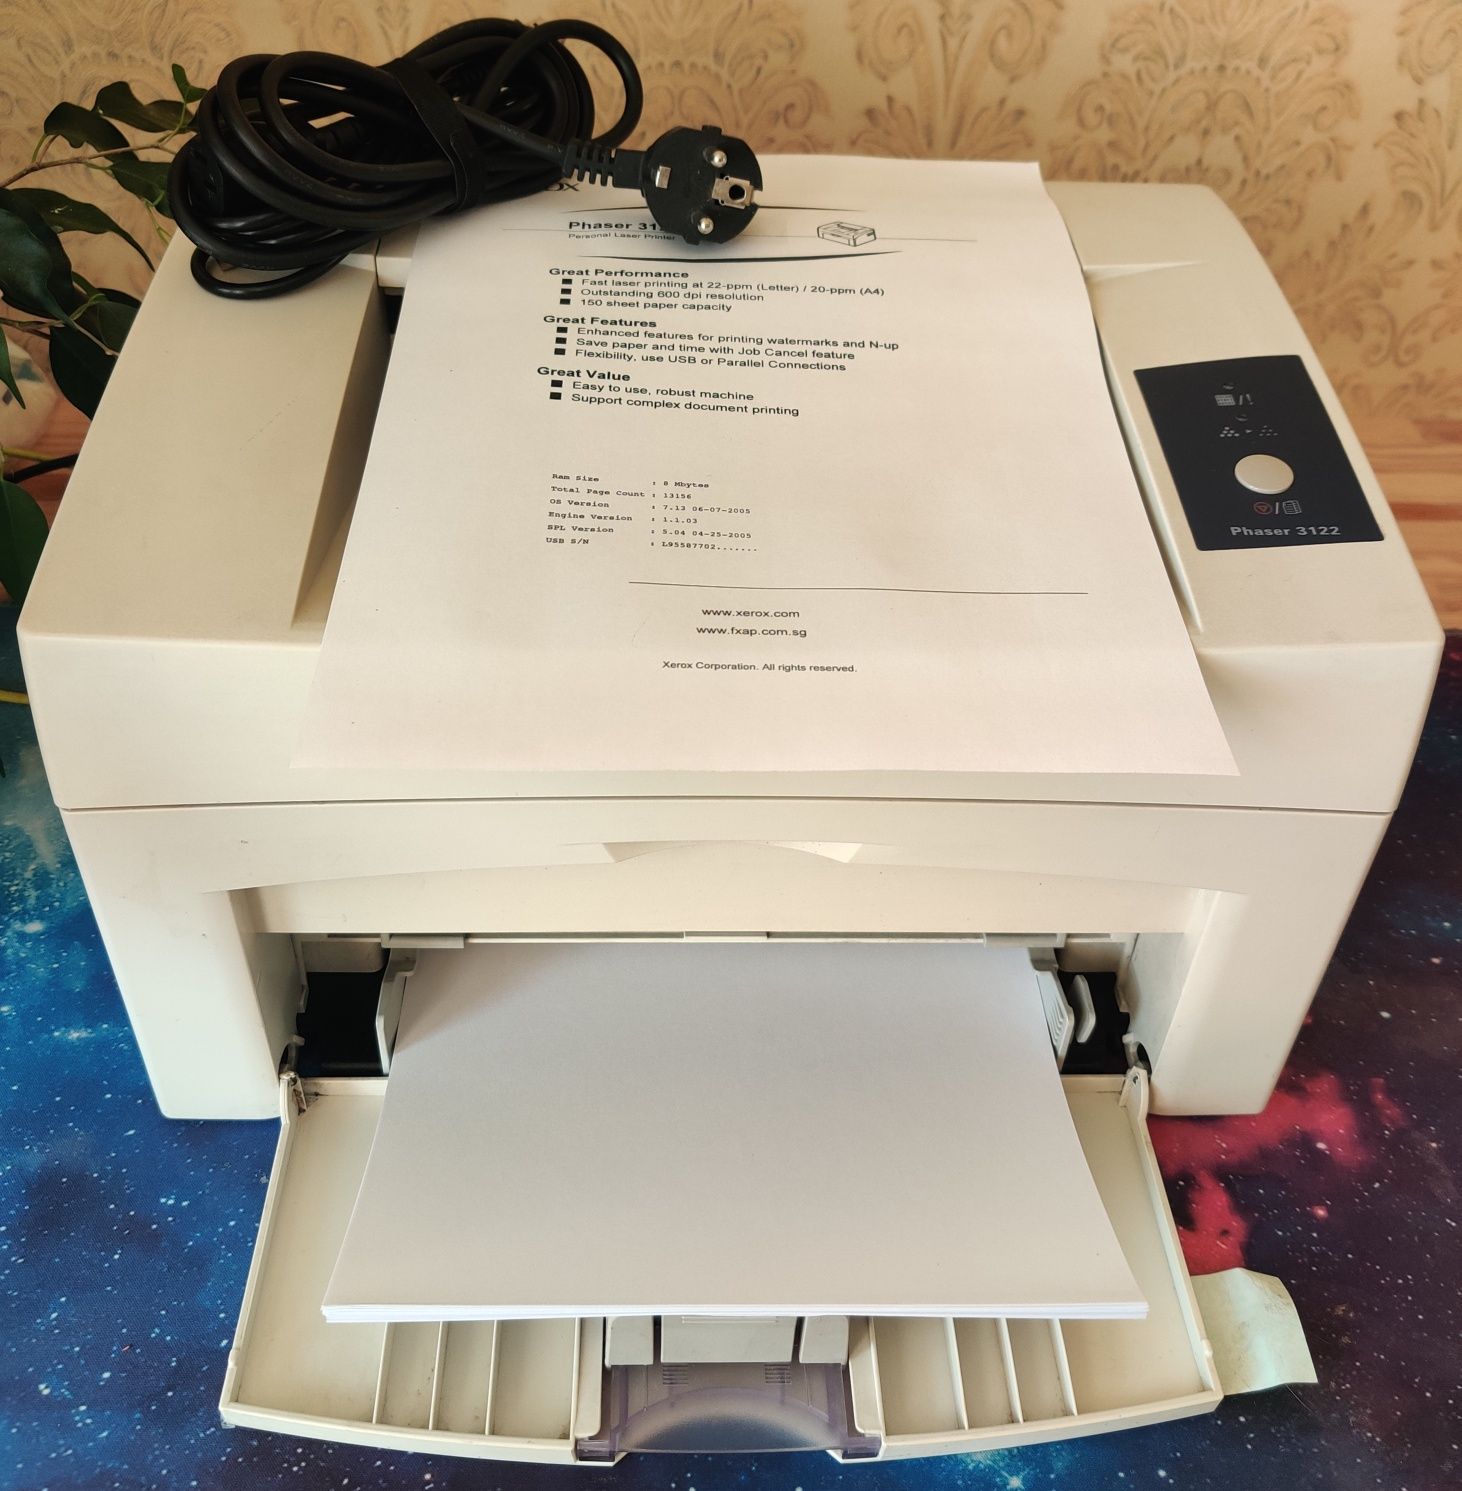 Продам принтер Xerox 3122. 13156 копий, был обслужен в СЦ, с кабелями